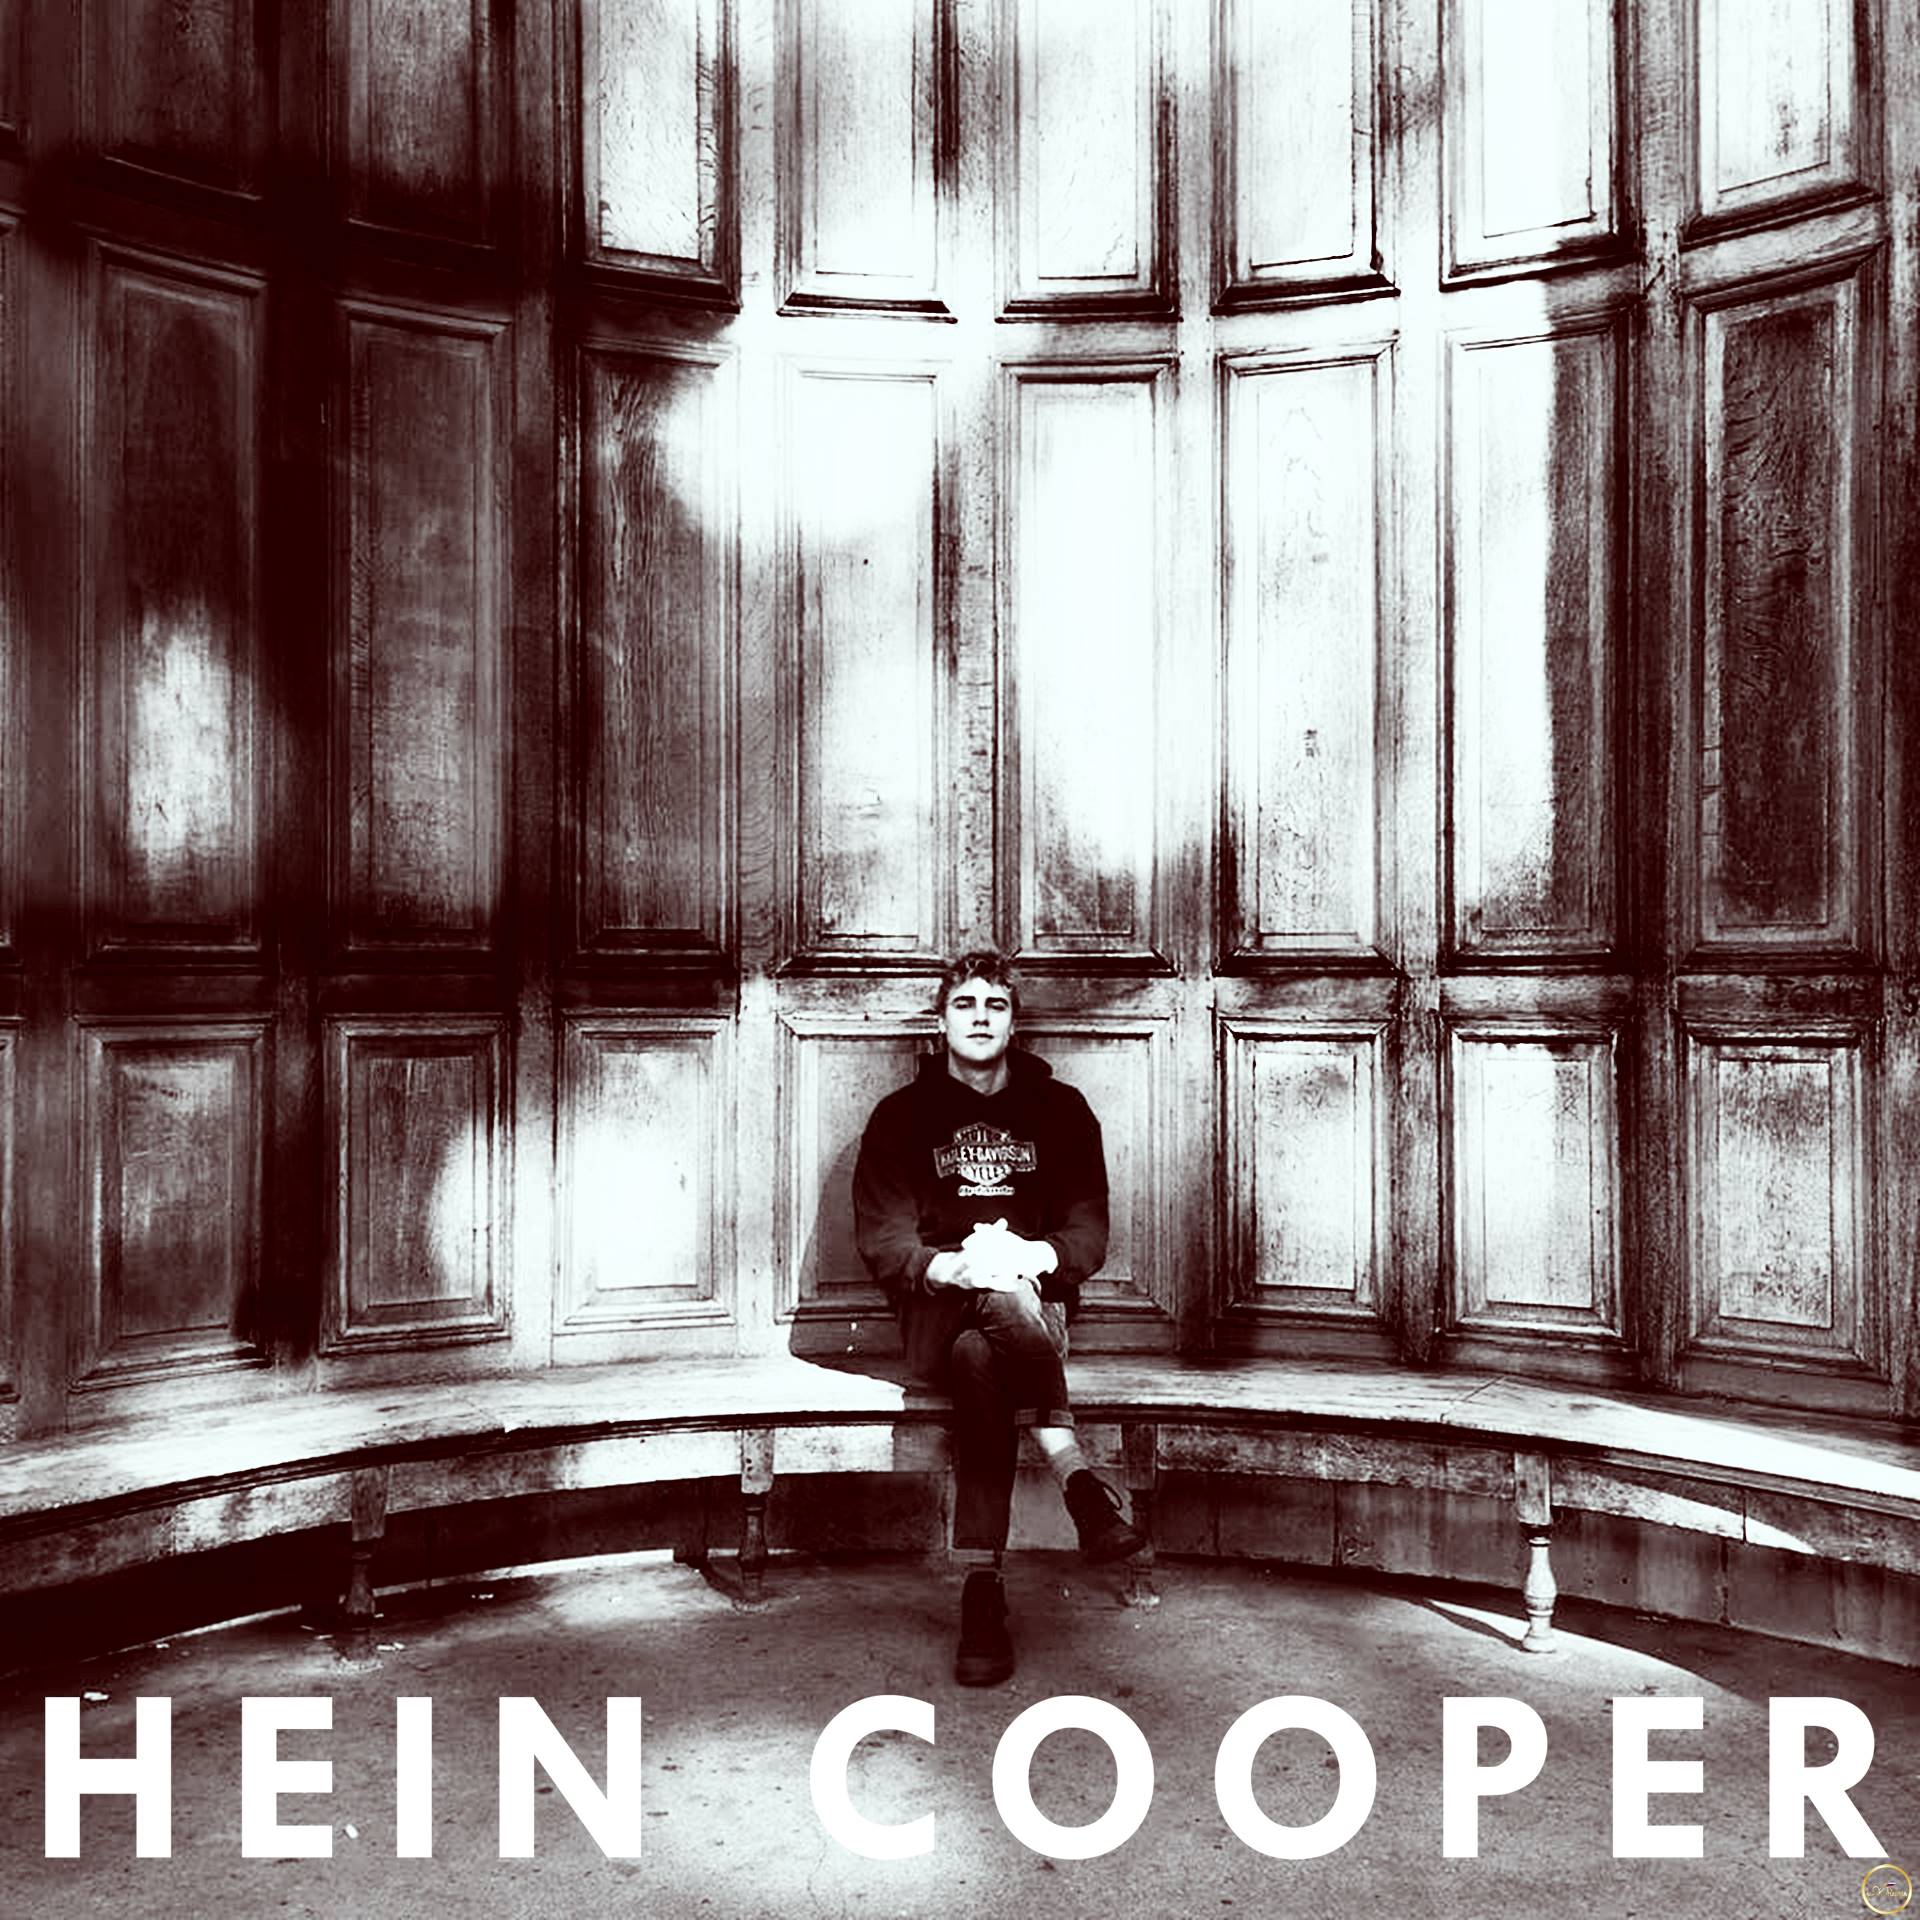 Hein Cooper